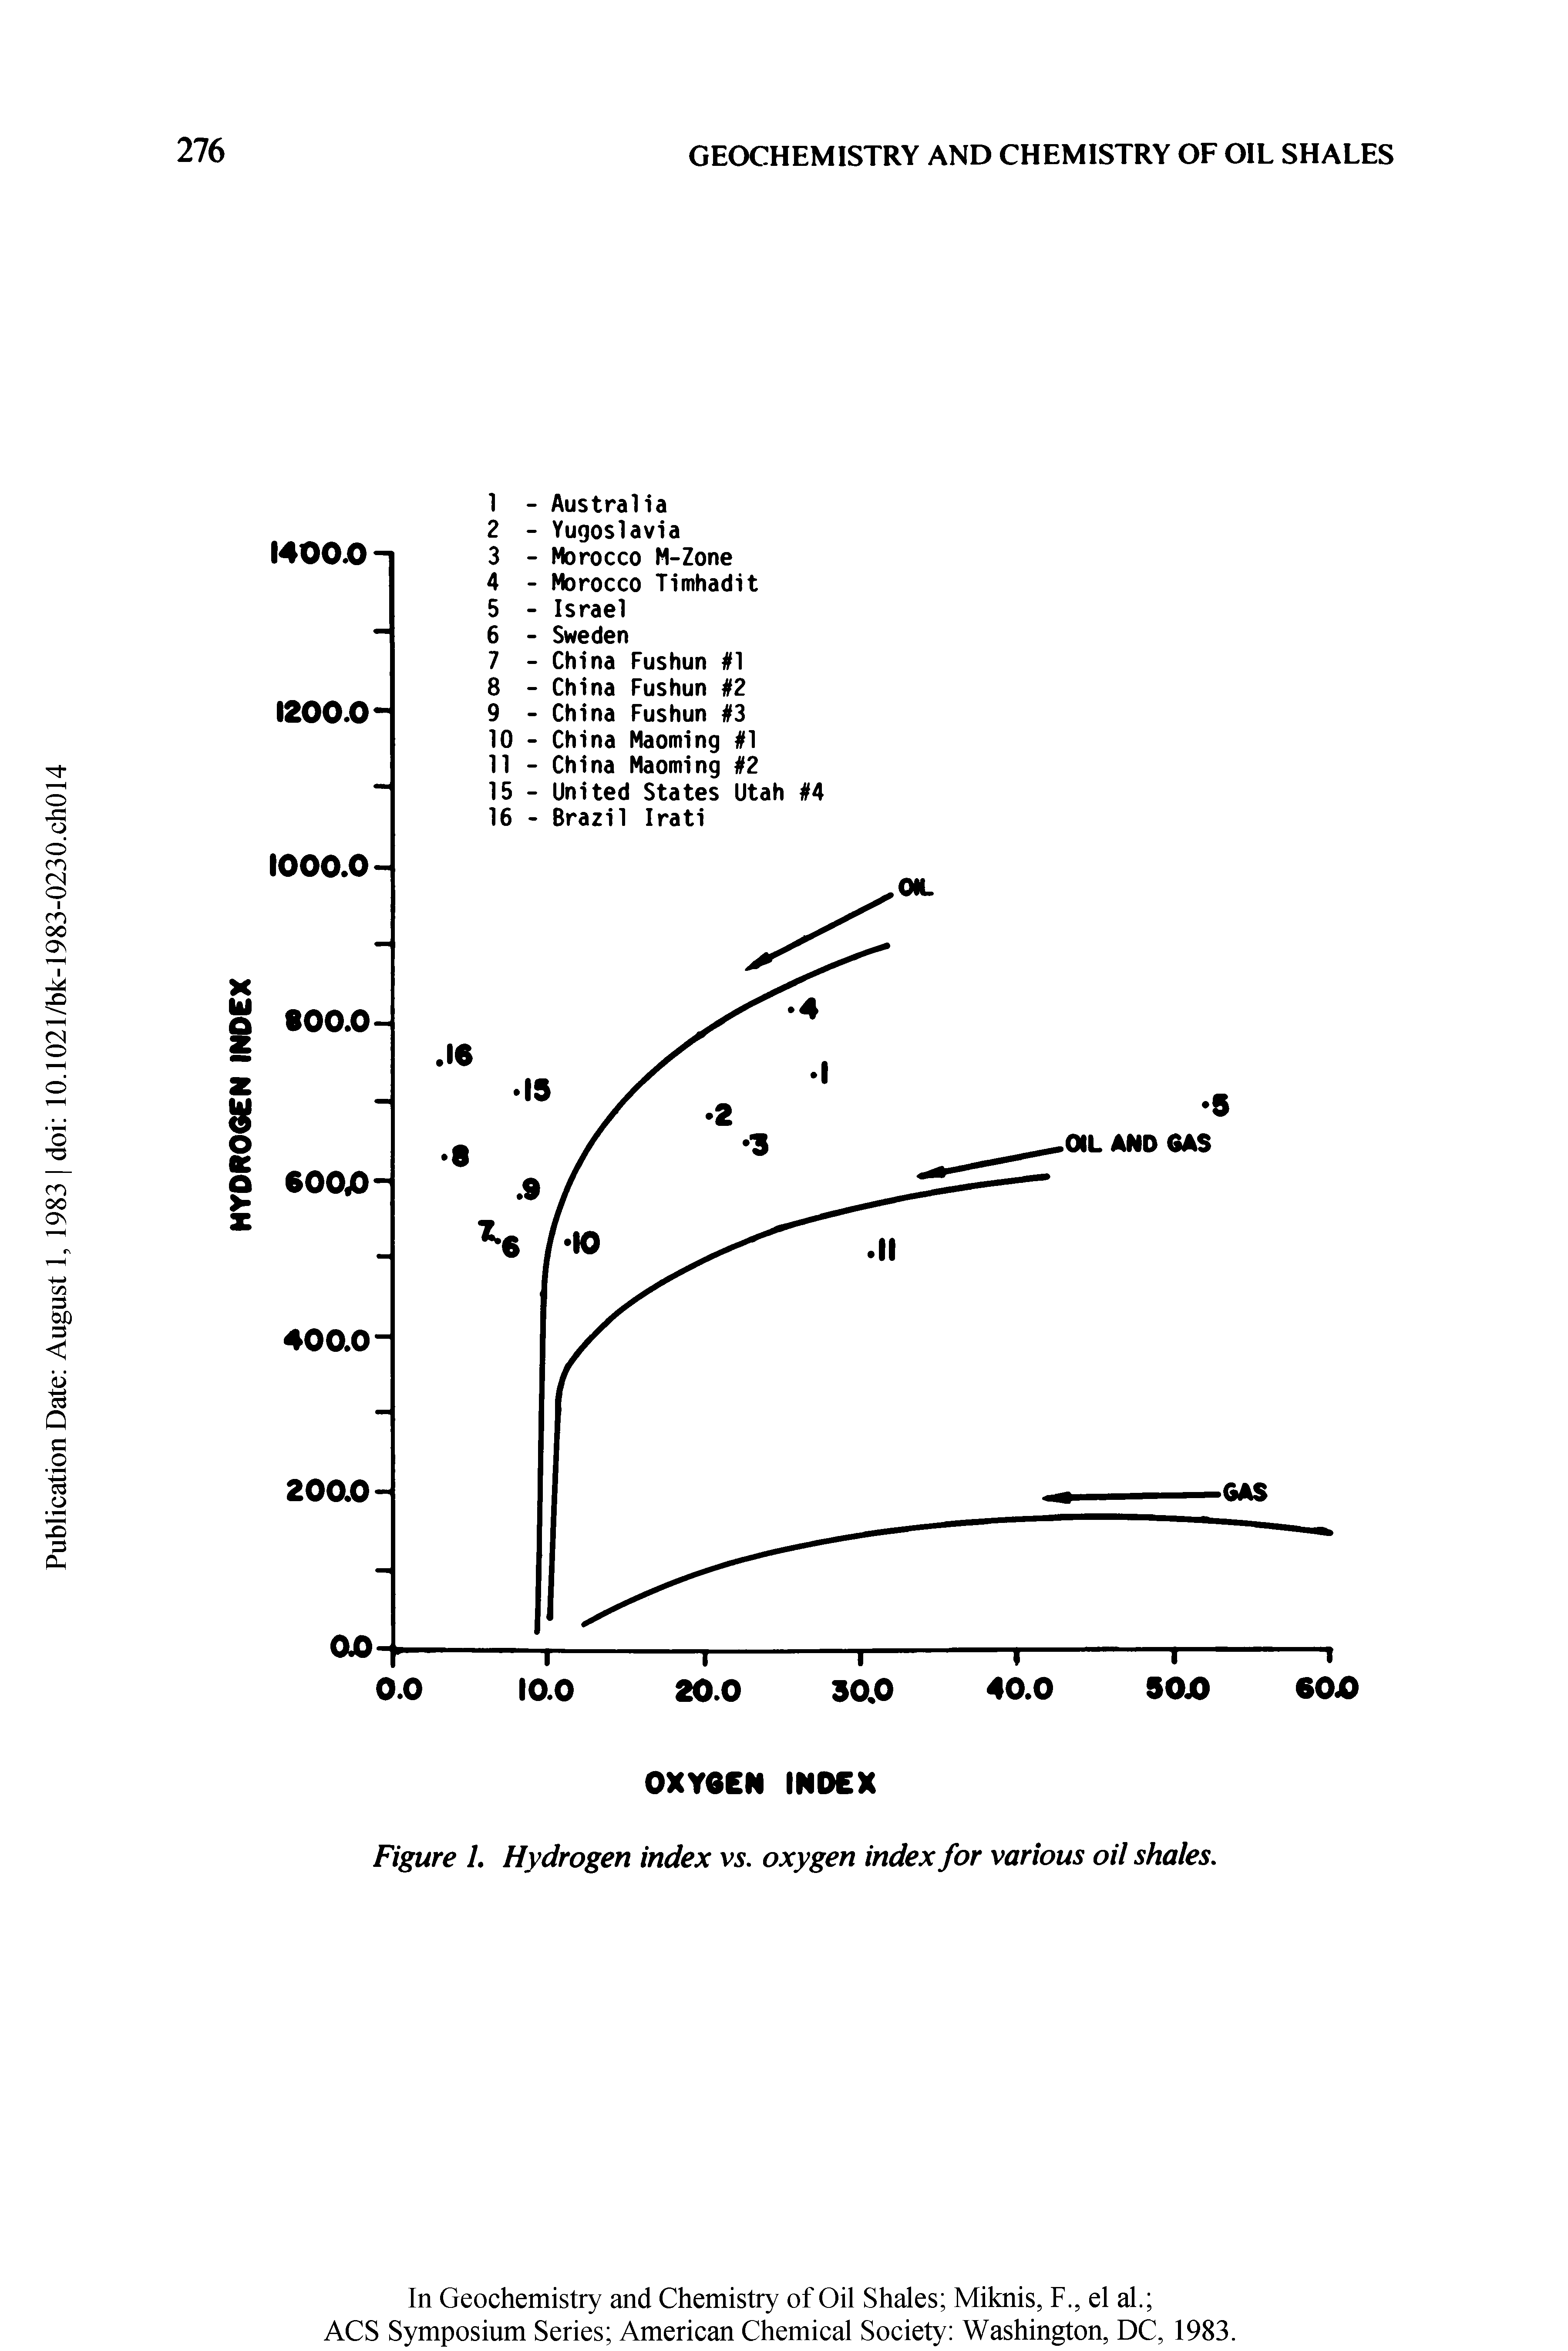 Figure 1. Hydrogen index vs. oxygen index for various oil shales.